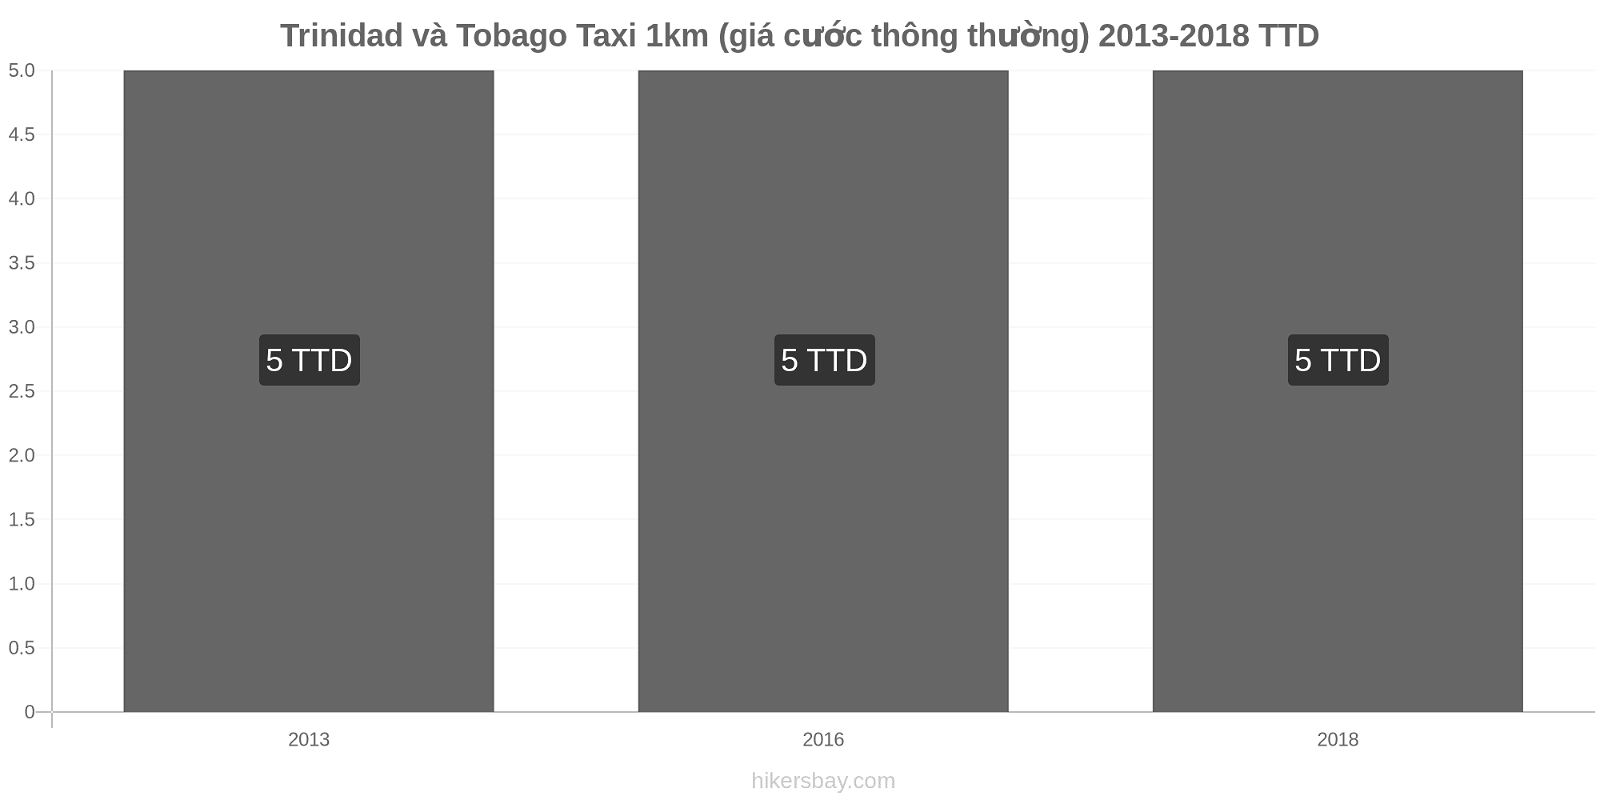 Trinidad và Tobago thay đổi giá cả Taxi 1km (giá cước thông thường) hikersbay.com